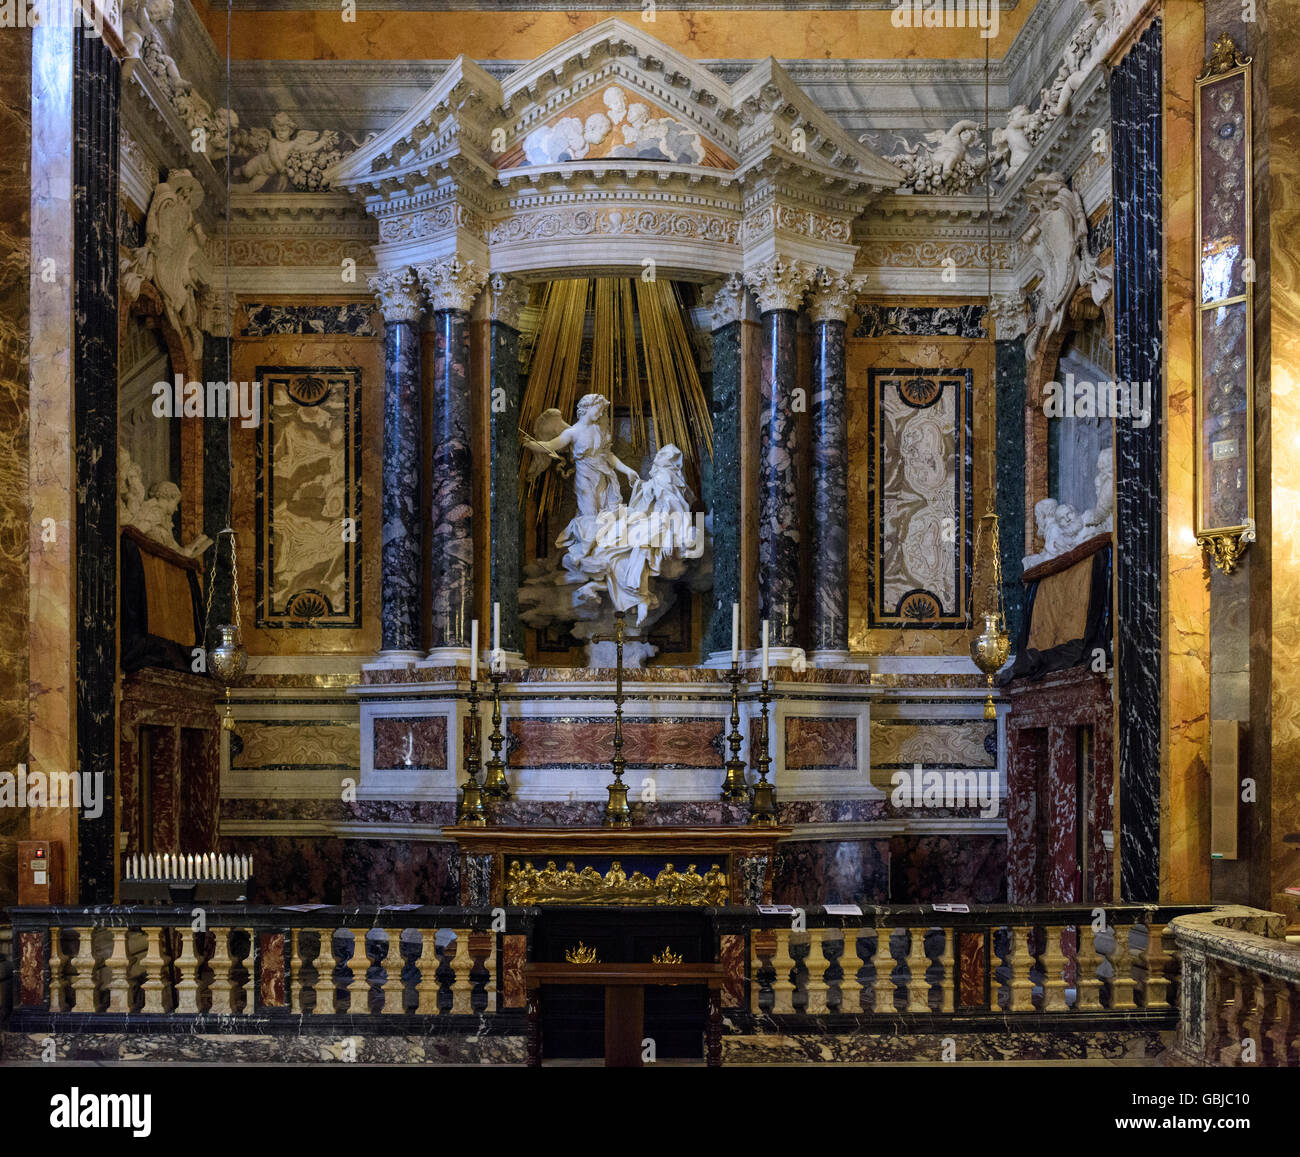 Saint teresa davila hi-res stock photography and images - Alamy